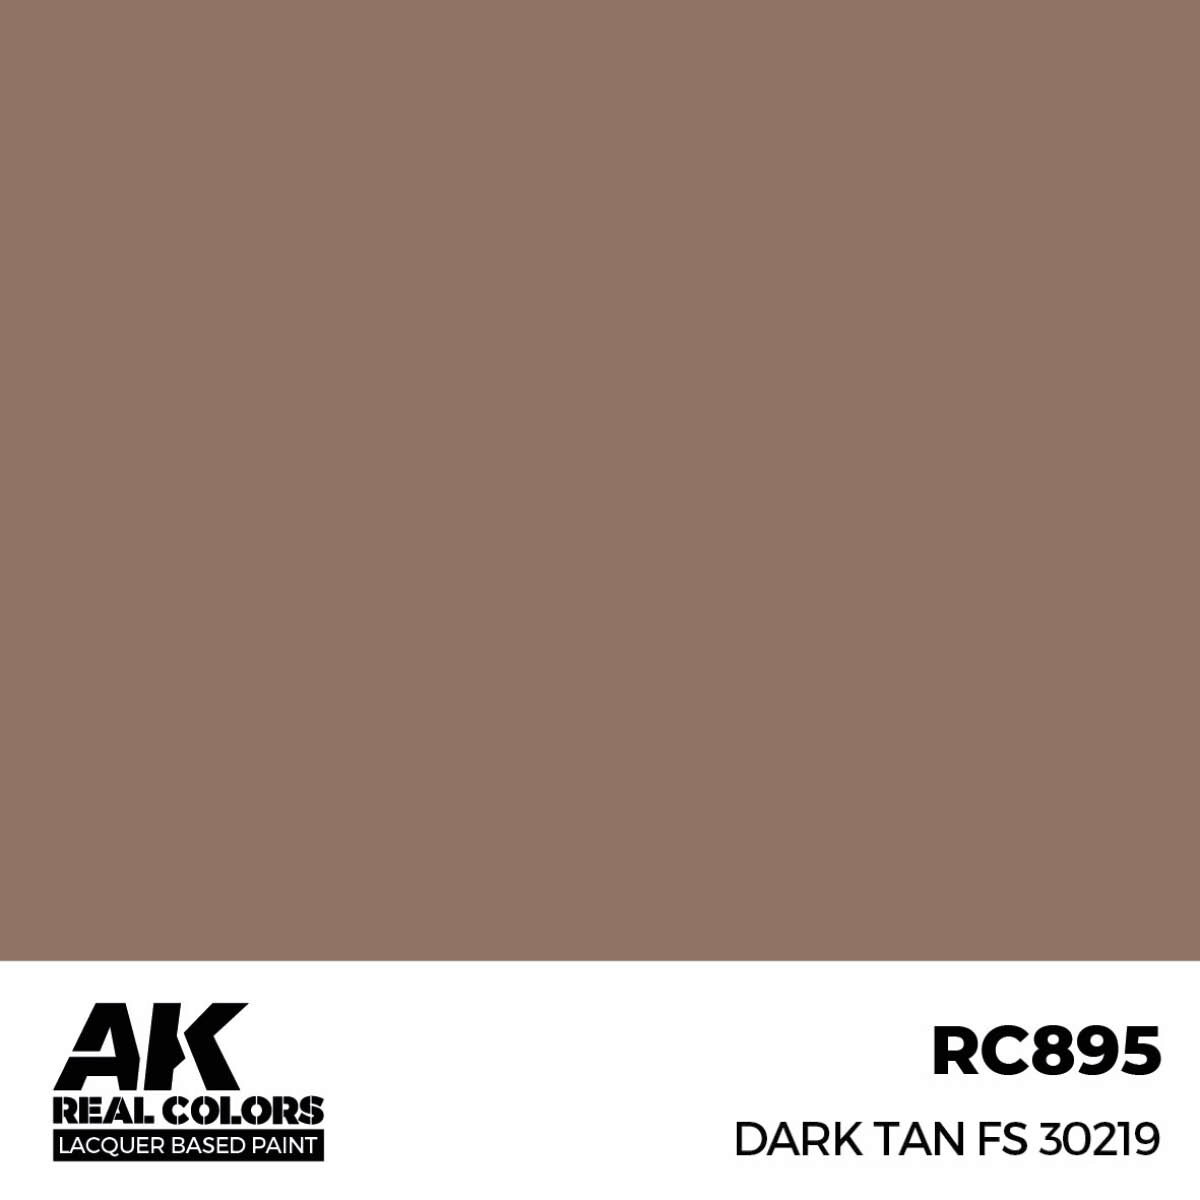 AK RC895 Real Colors Dark Tan FS 30219 17 ml.